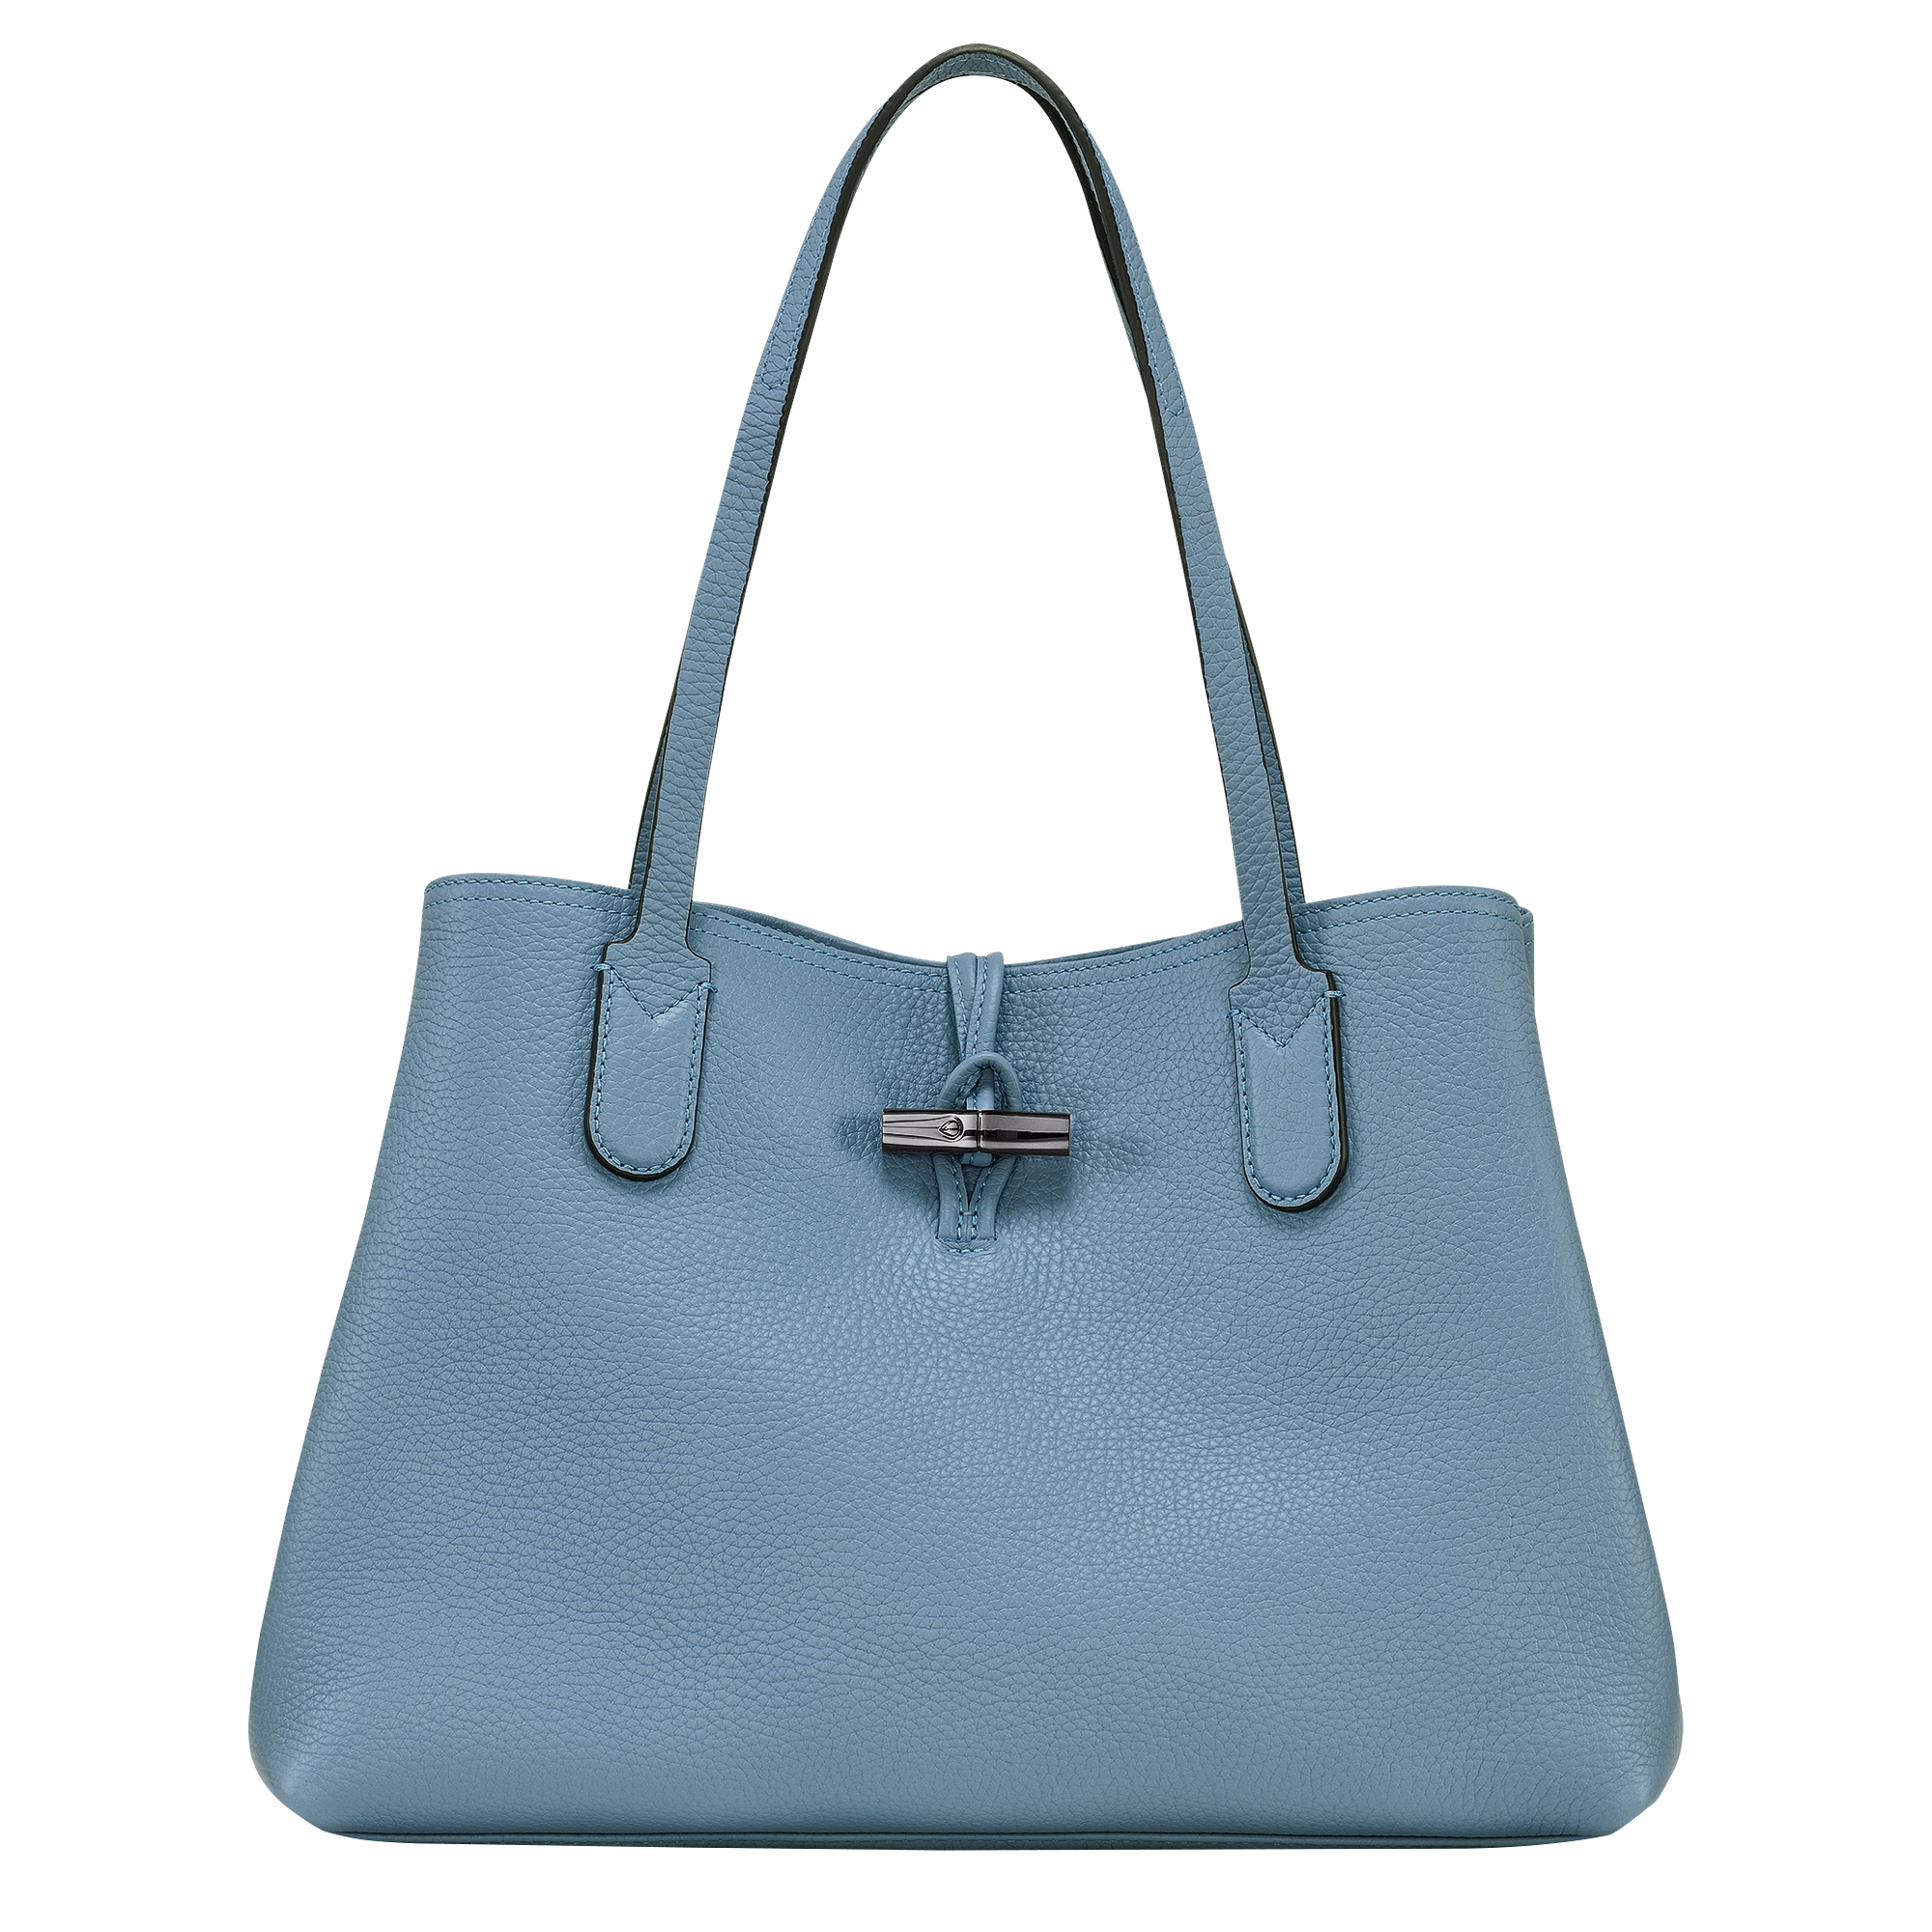 50代の女性に人気のレディーストートバッグを扱う定番ブランドのバッグはLONGCHAMPのロゾトートバッグL